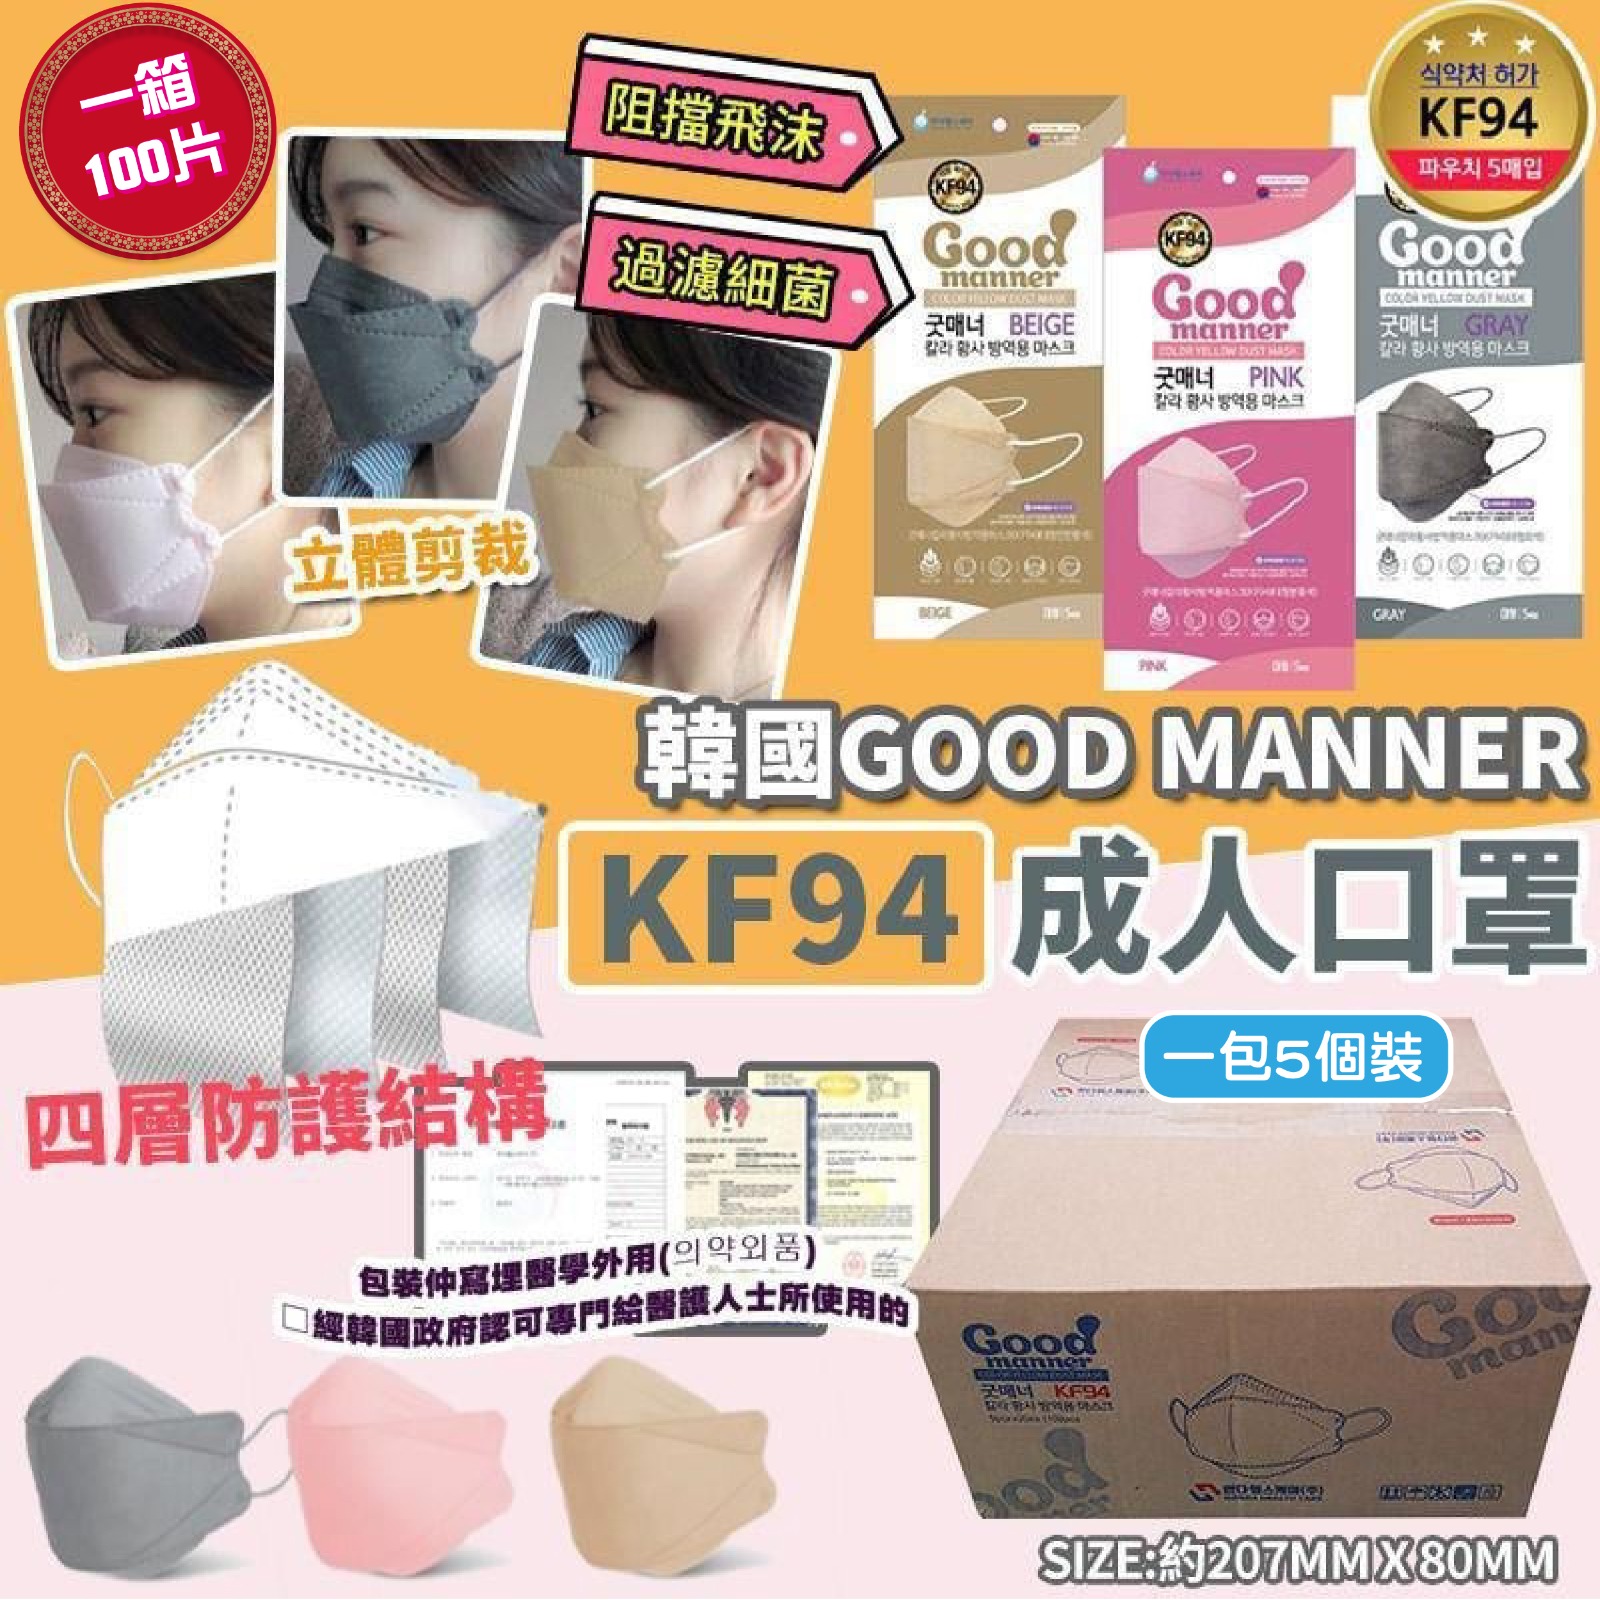 韓國Good Manner KF94四層防護成人口罩100片裝 (奶茶色 / 粉紅色 / 灰色) | 每包5個, 共20包（預計4月尾至5月初到貨)